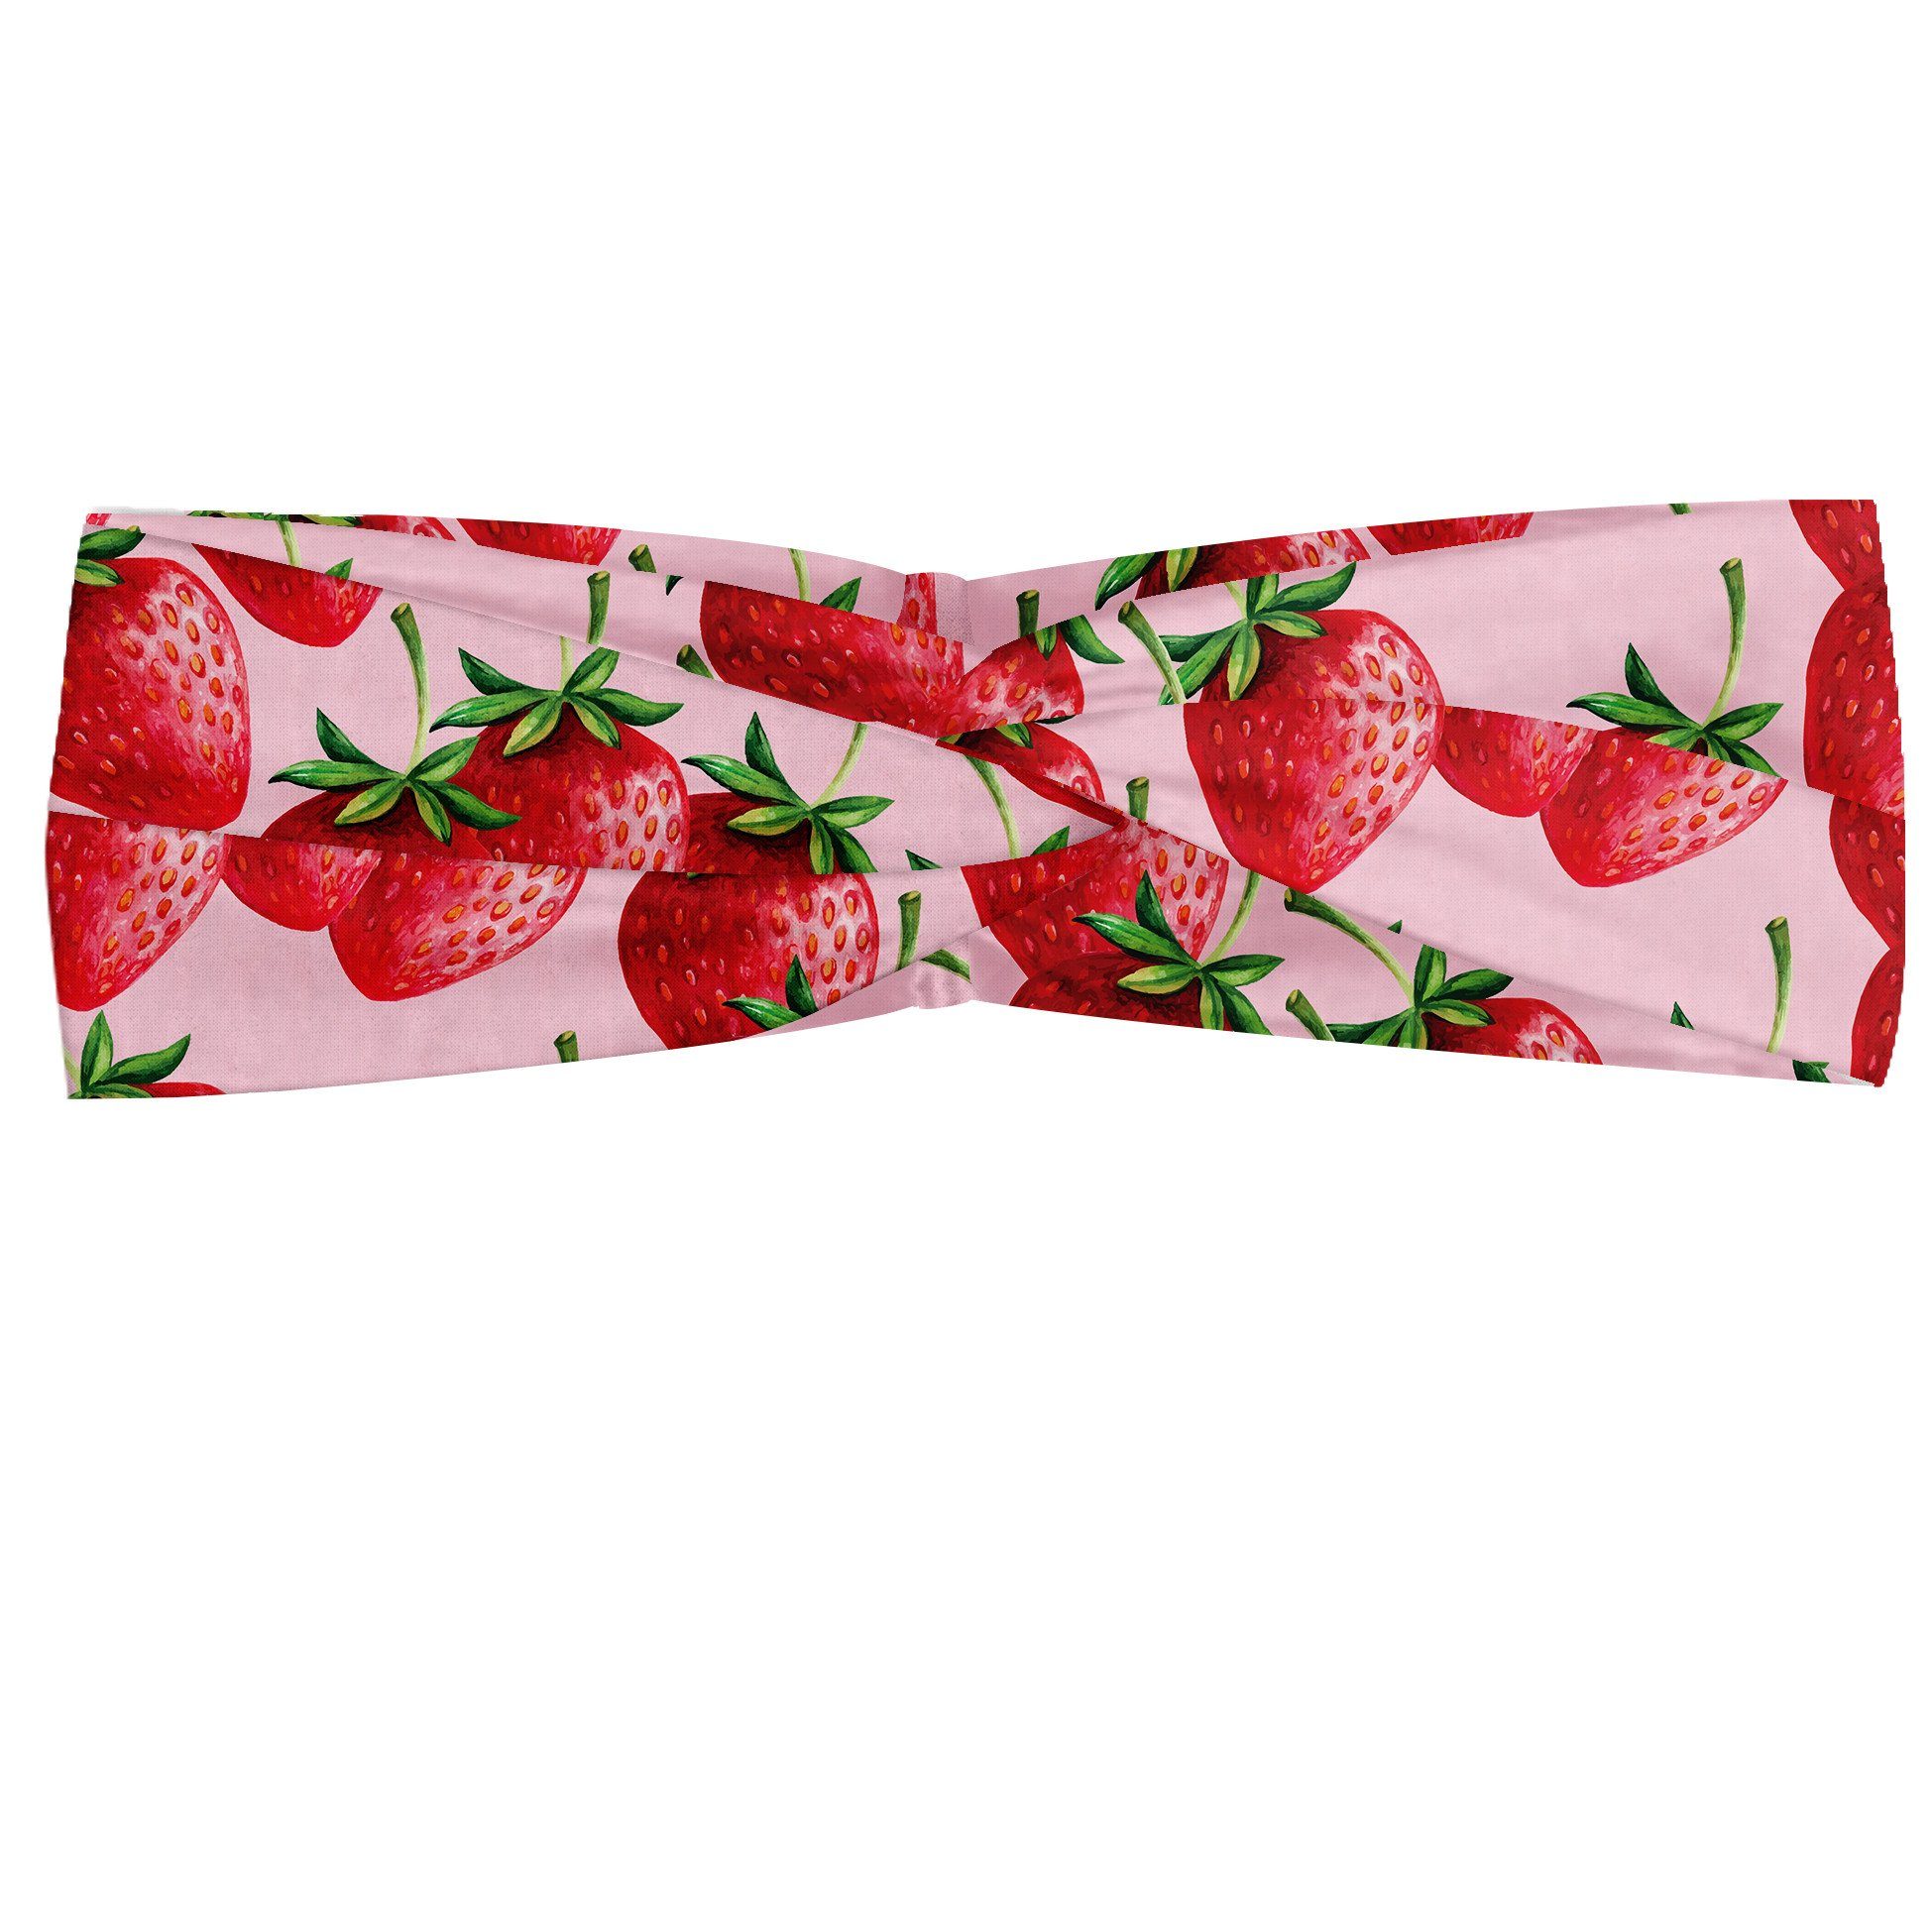 Abakuhaus Stirnband Elastisch und Angenehme alltags accessories rot Saftige Erdbeeren Obst